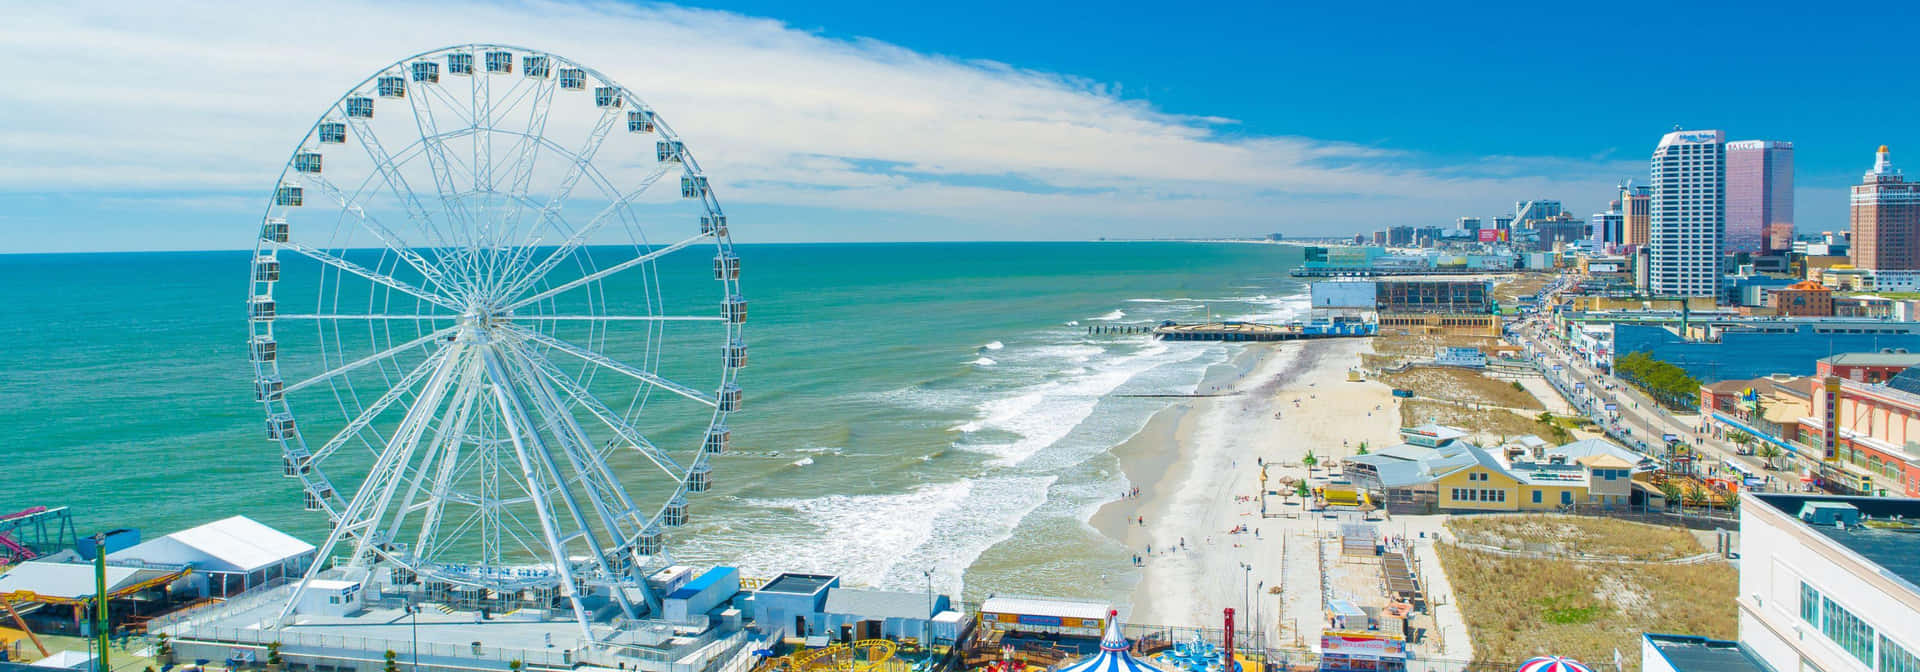 Atlantic City Ferris Wheel At Beach Picture